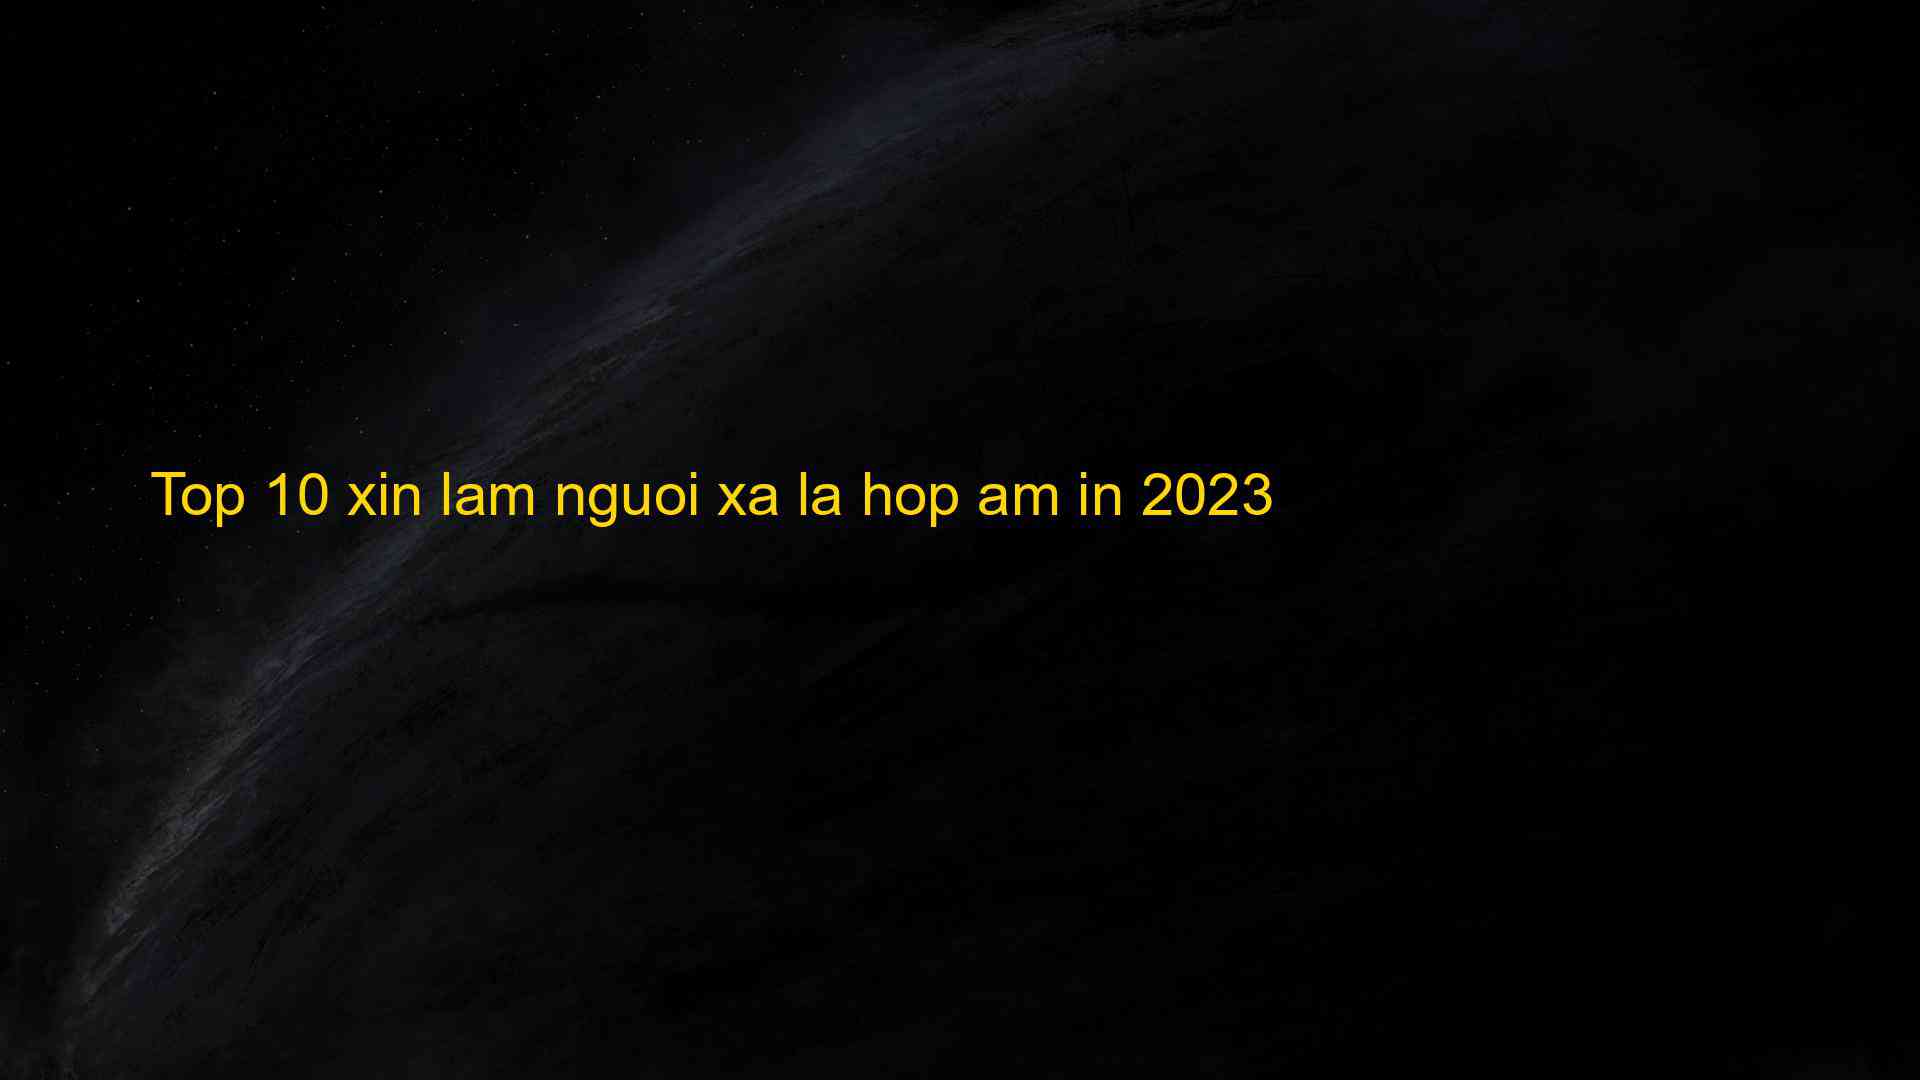 Top 10 xin lam nguoi xa la hop am in 2023 - Chia Sẻ Kiến Thức Điện Máy Việt Nam